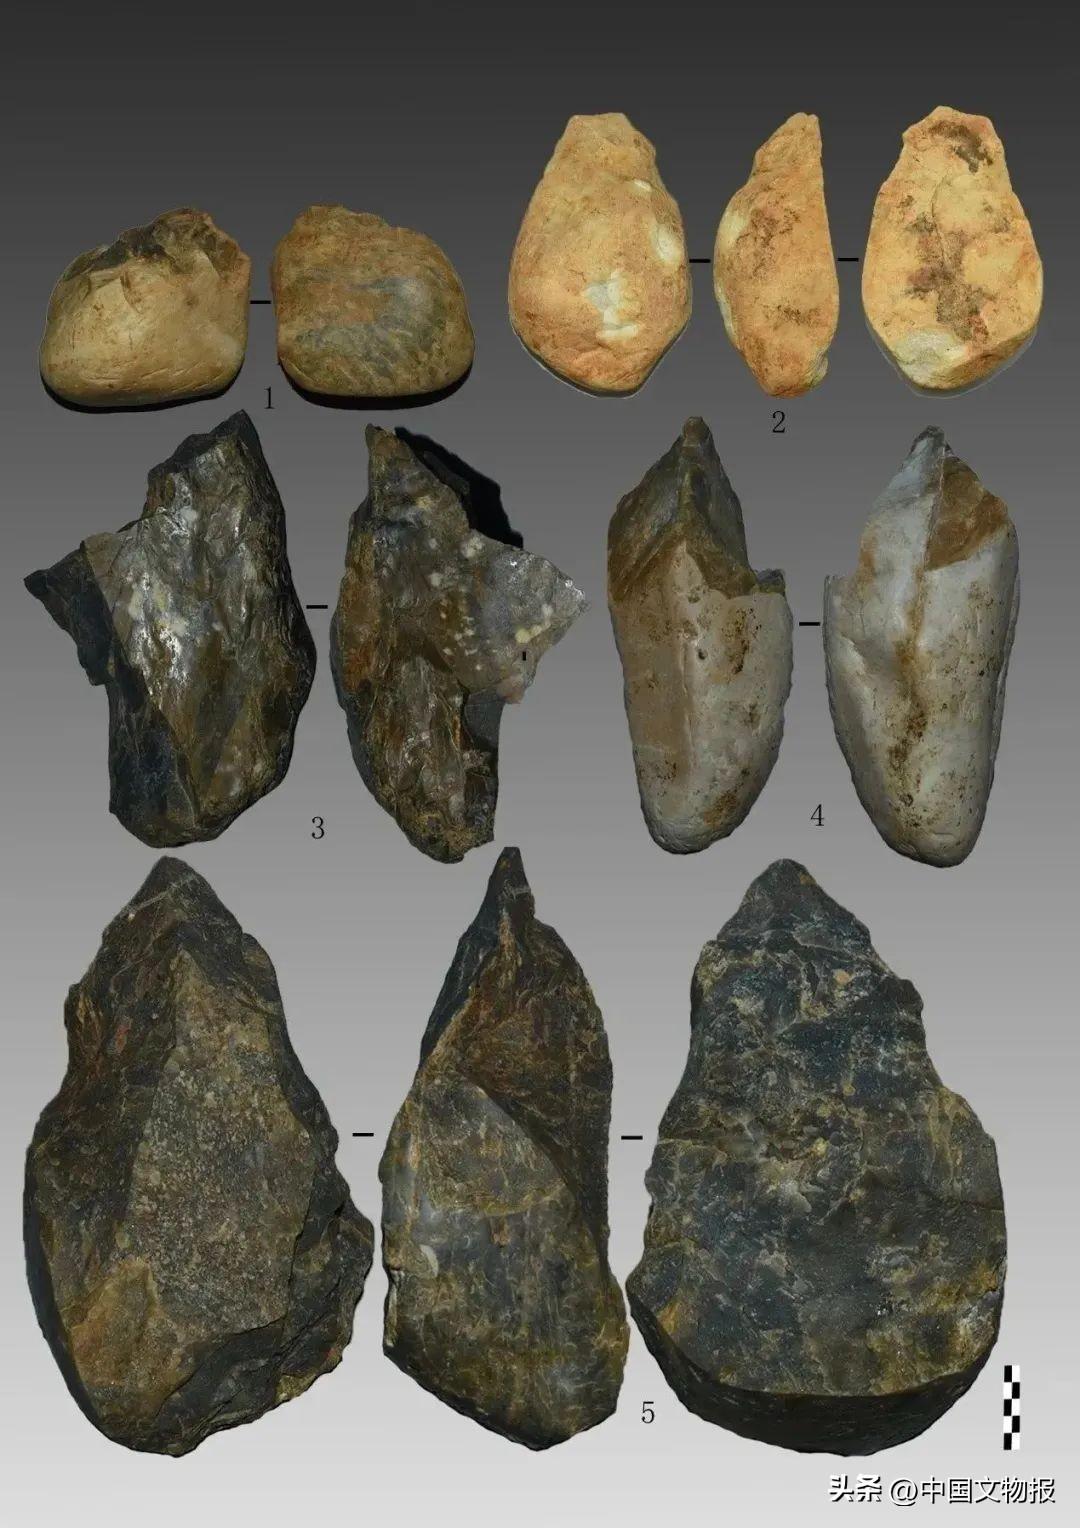 新发现 | 湖南常德黄土山旧石器遗址发掘收获